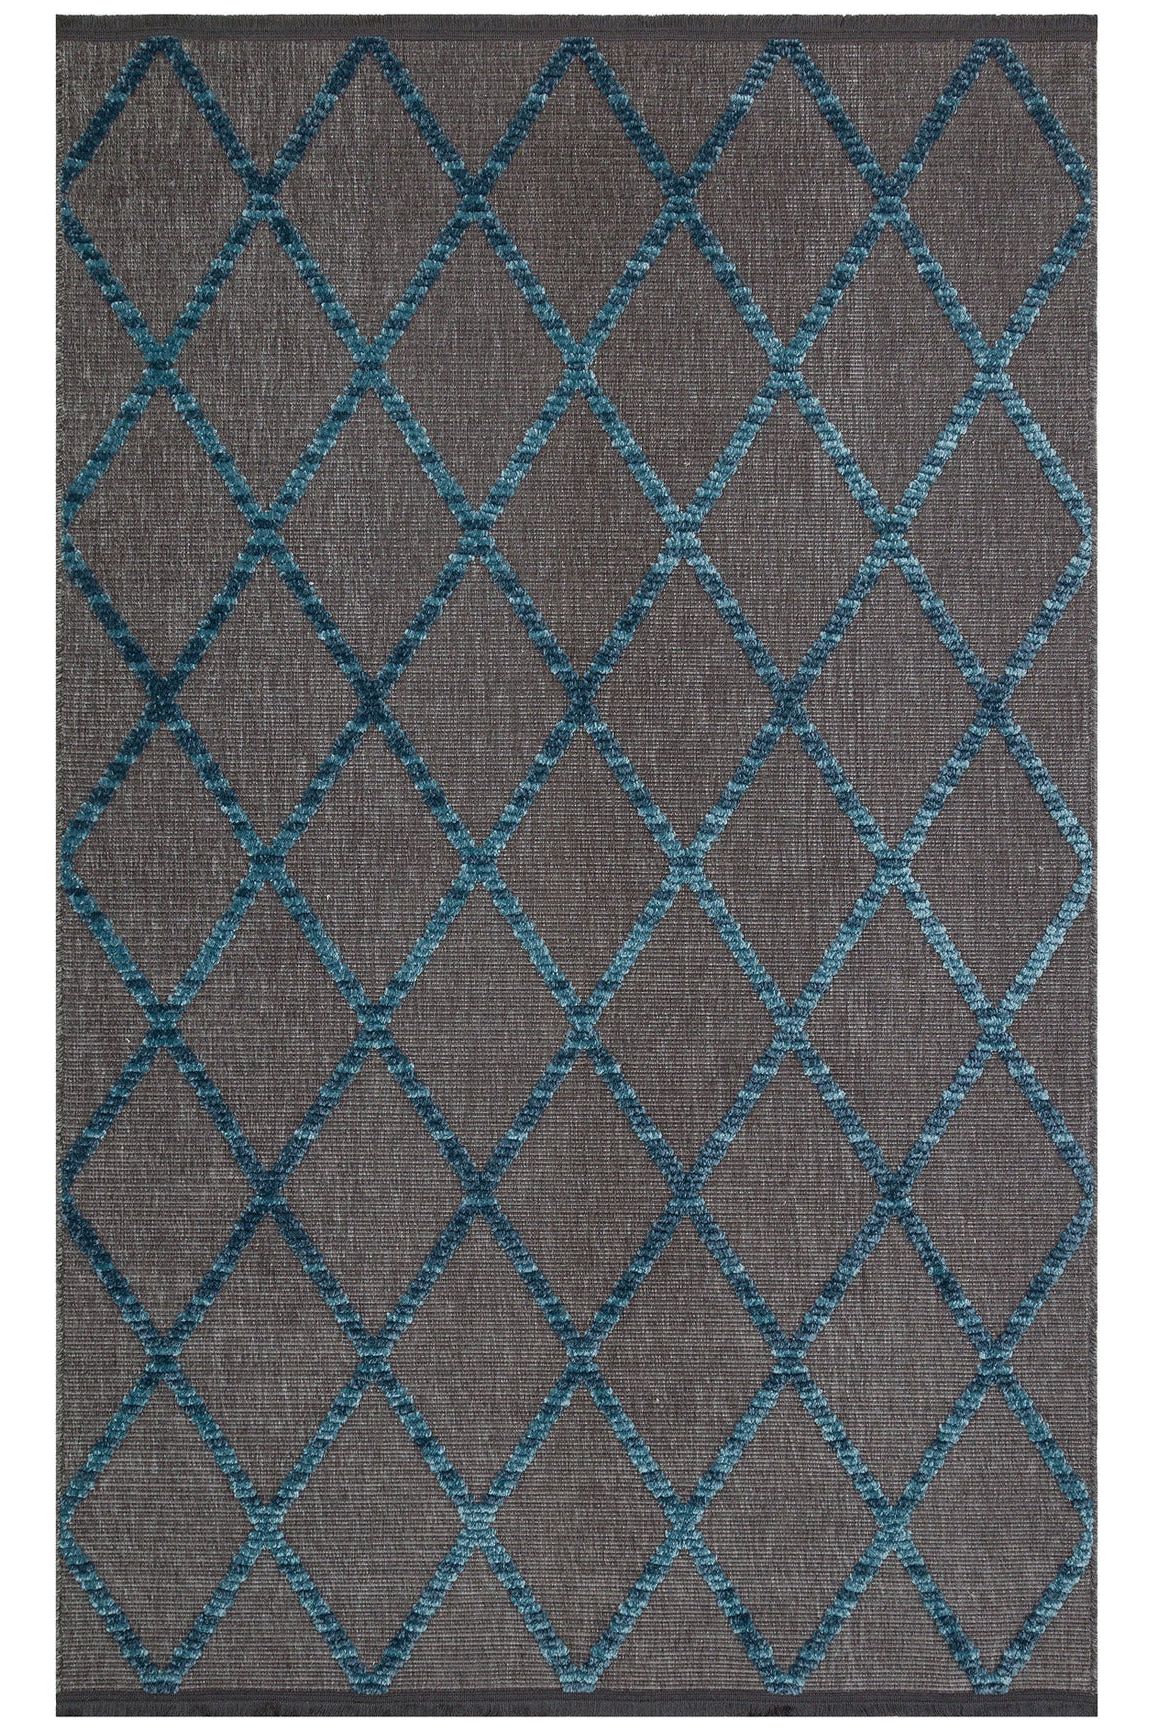 #Turkish_Carpets_Rugs# #Modern_Carpets# #Abrash_Carpets#Jkr 04 Antrasit Blue